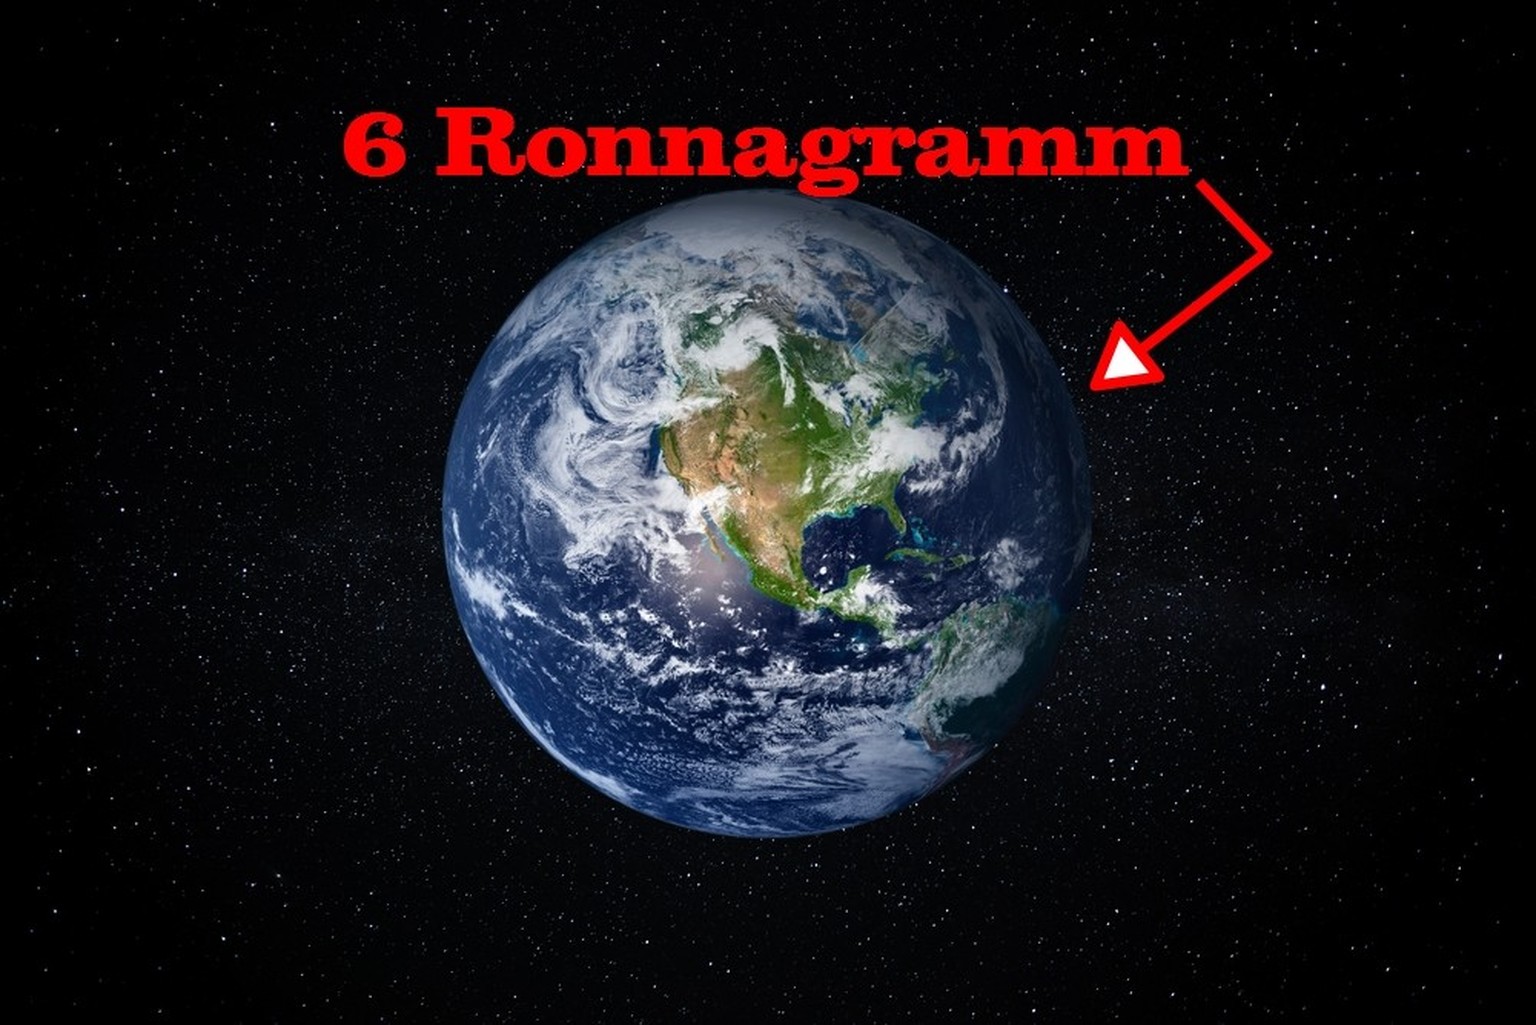 Die Erde hat eine Masse von knapp 6 Ronnagramm.